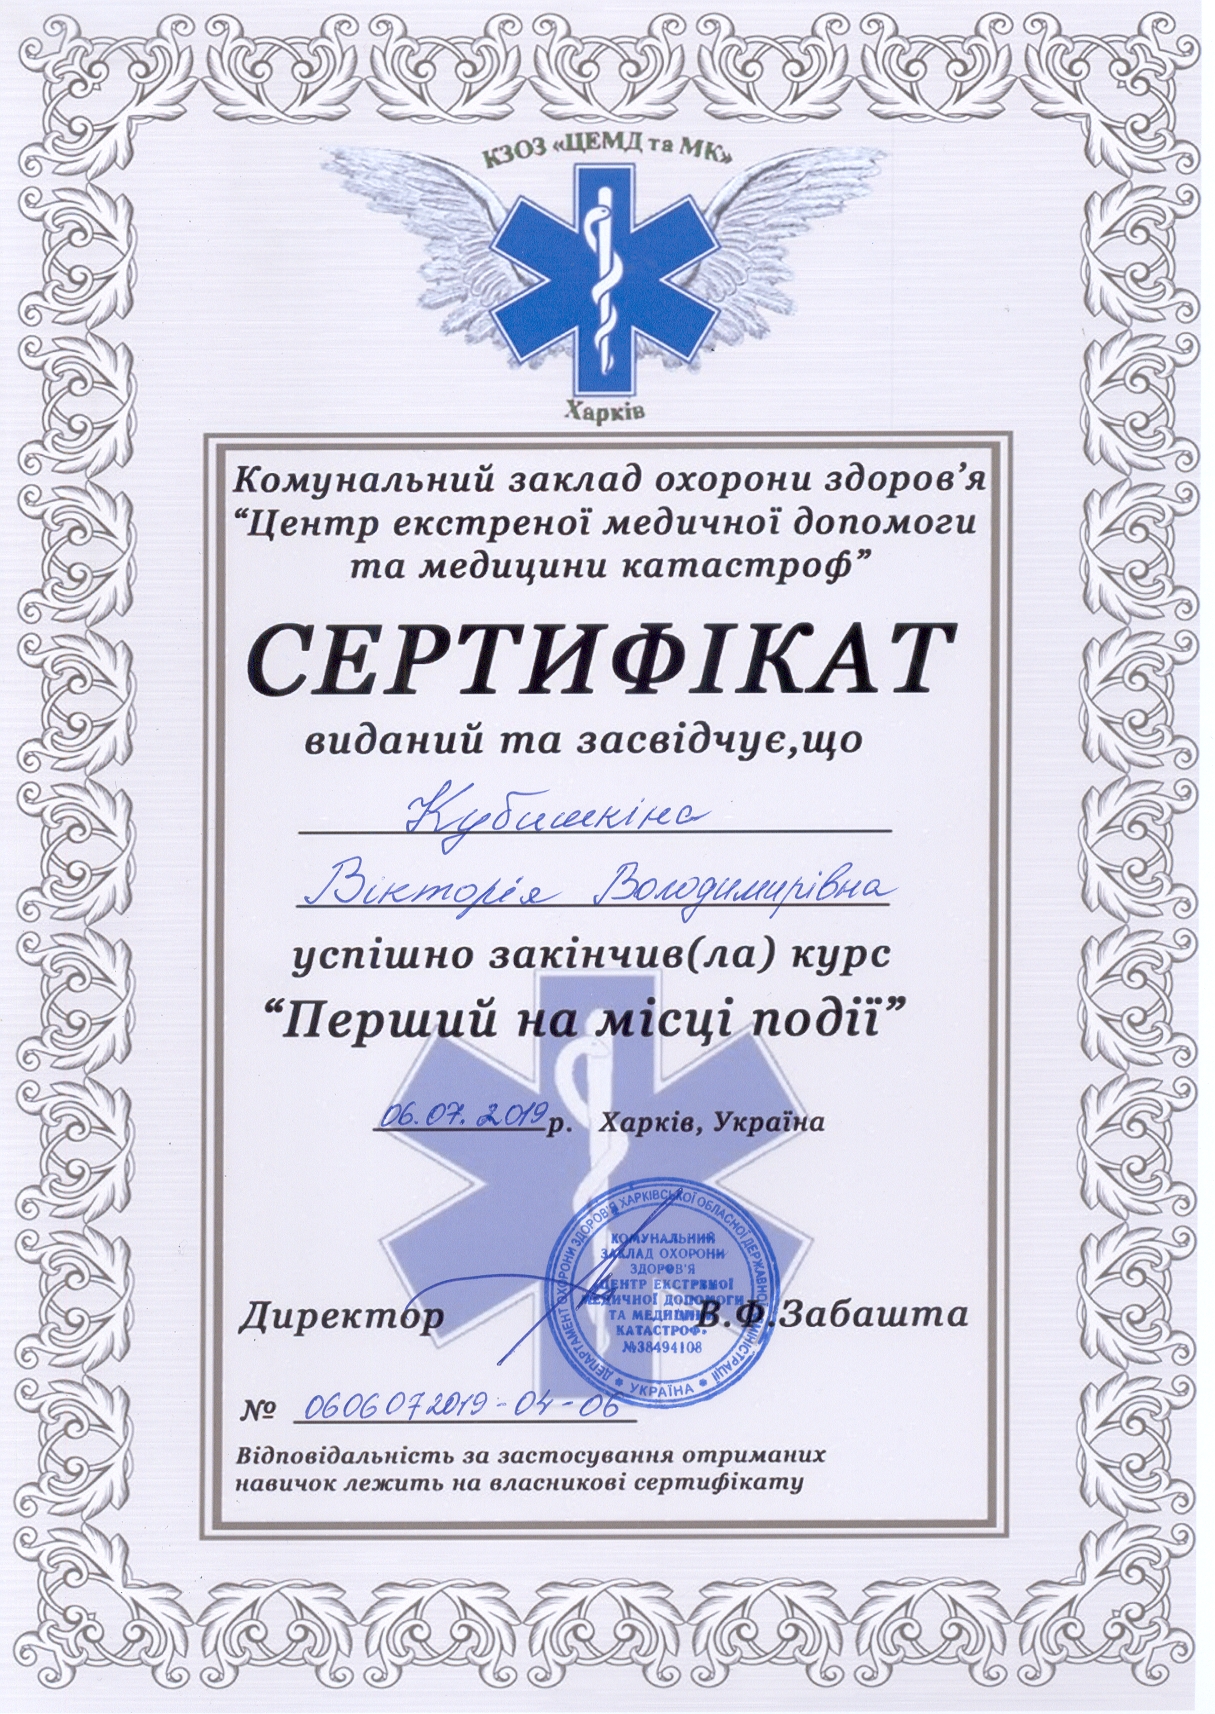 Сертификат №0606072019 04 06 Кубышкина Виктория